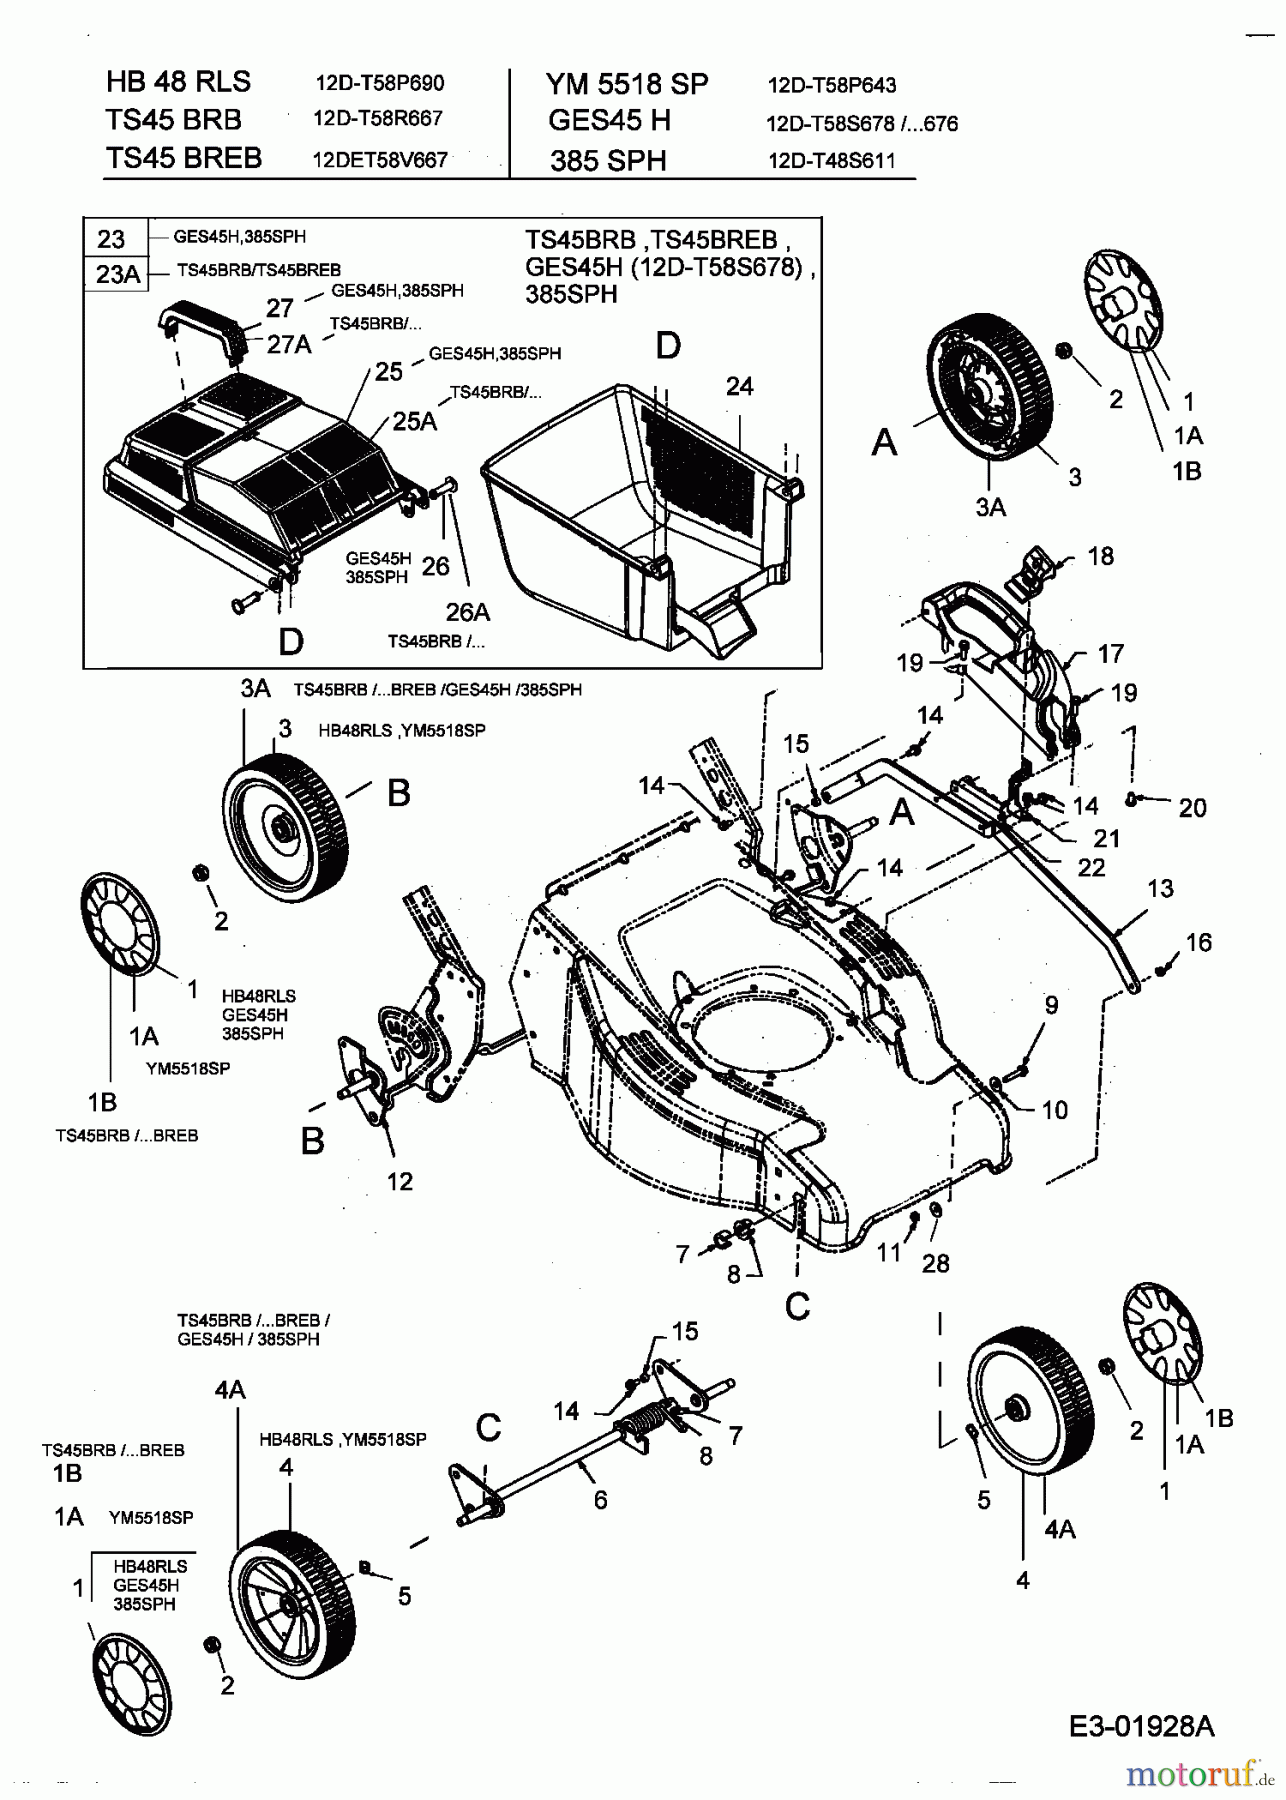  Lawnflite Motormäher mit Antrieb 385 SPH 12D-T48S611  (2004) Grasfangkorb, Räder, Schnitthöhenverstellung